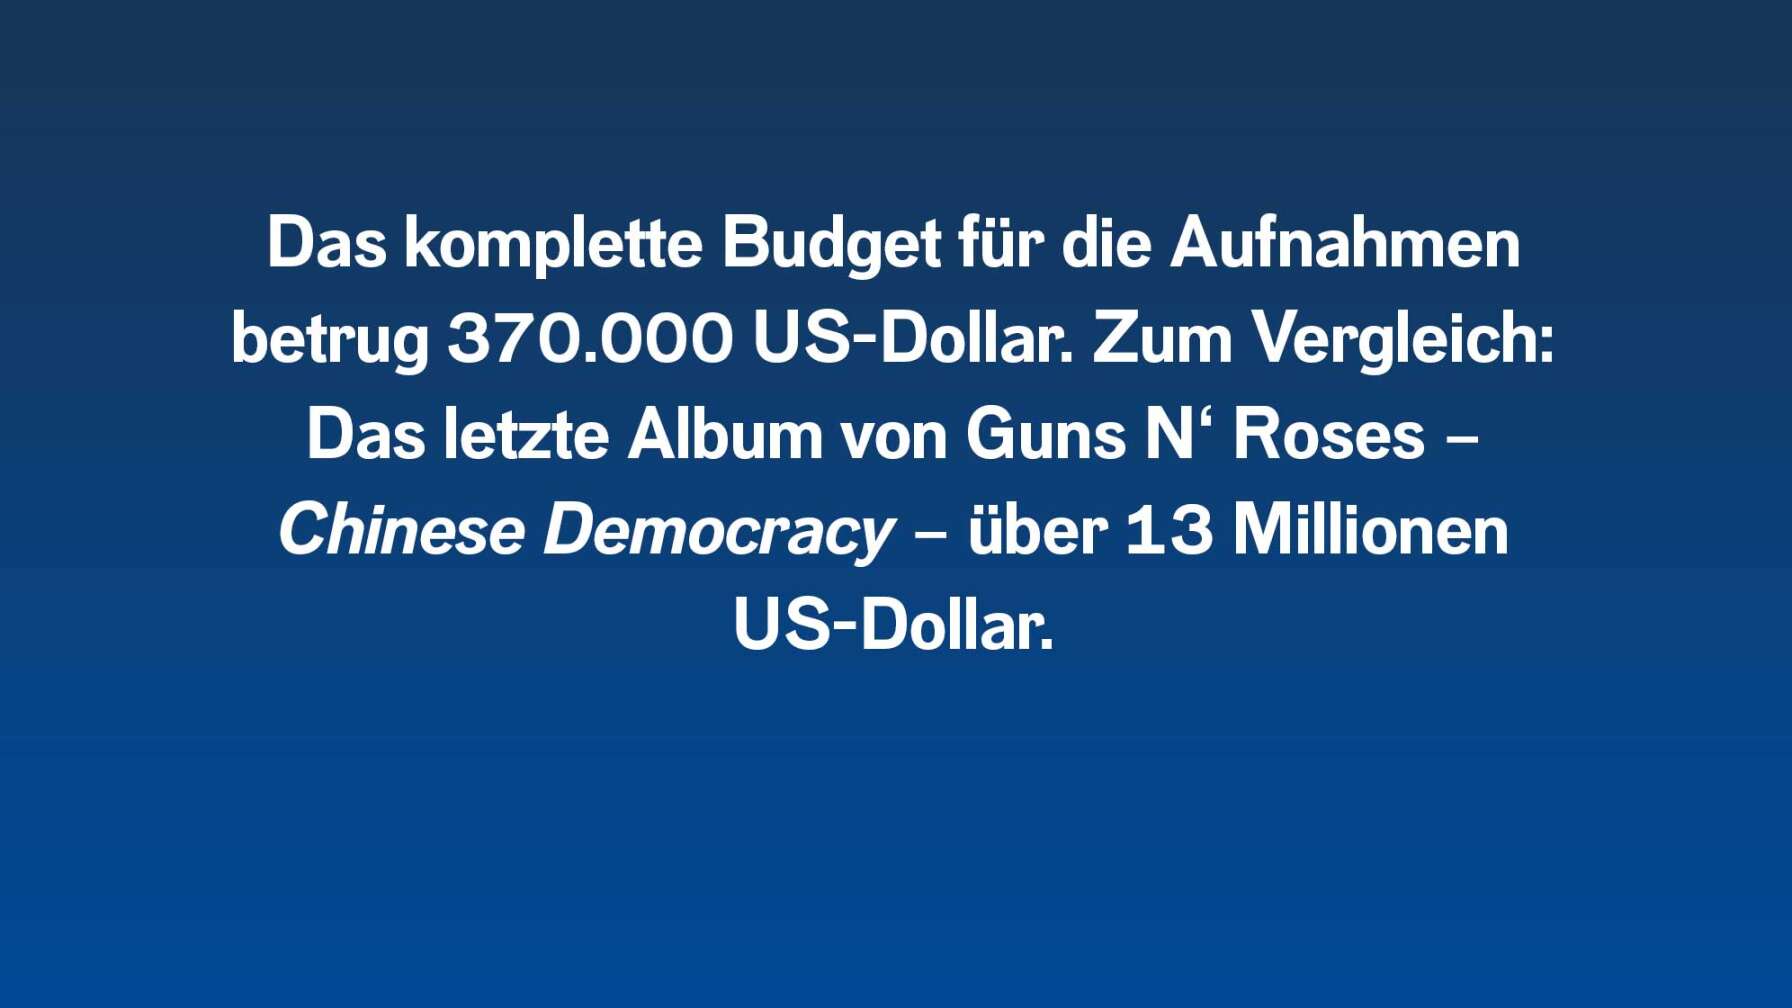 Das komplette Budget für die Aufnahmen betrug 370.000 US-Dollar. Zum Vergleich: Das letzte Album von Guns N‘ Roses – Chinese Democracy – über 13 Millionen US-Dollar.